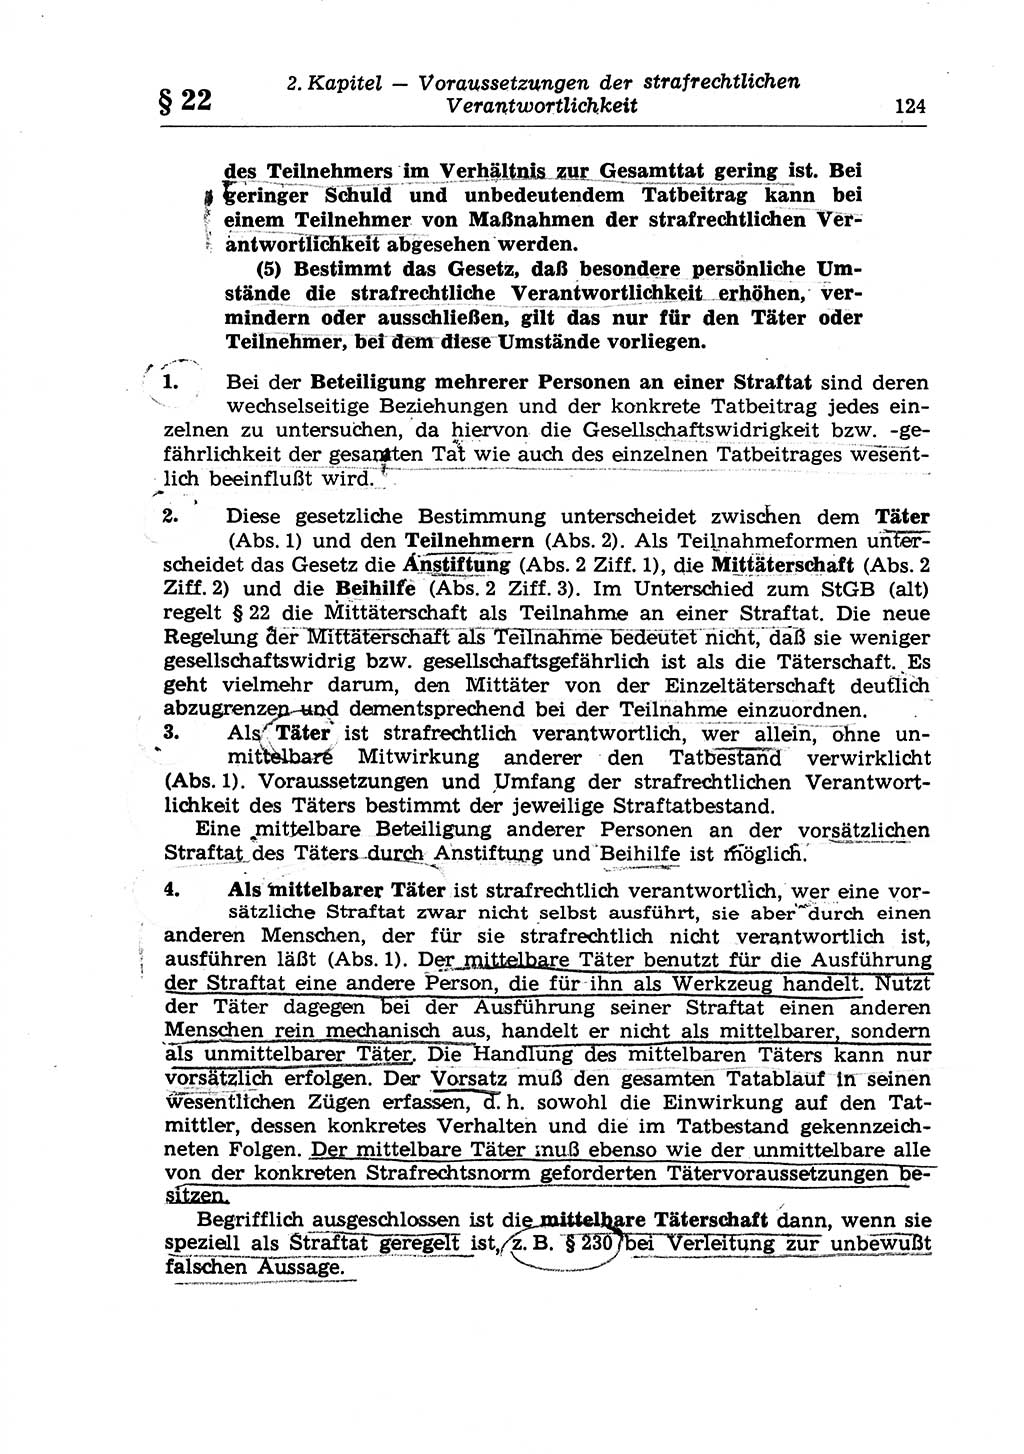 Strafrecht der Deutschen Demokratischen Republik (DDR), Lehrkommentar zum Strafgesetzbuch (StGB), Allgemeiner Teil 1970, Seite 124 (Strafr. DDR Lehrkomm. StGB AT 1970, S. 124)